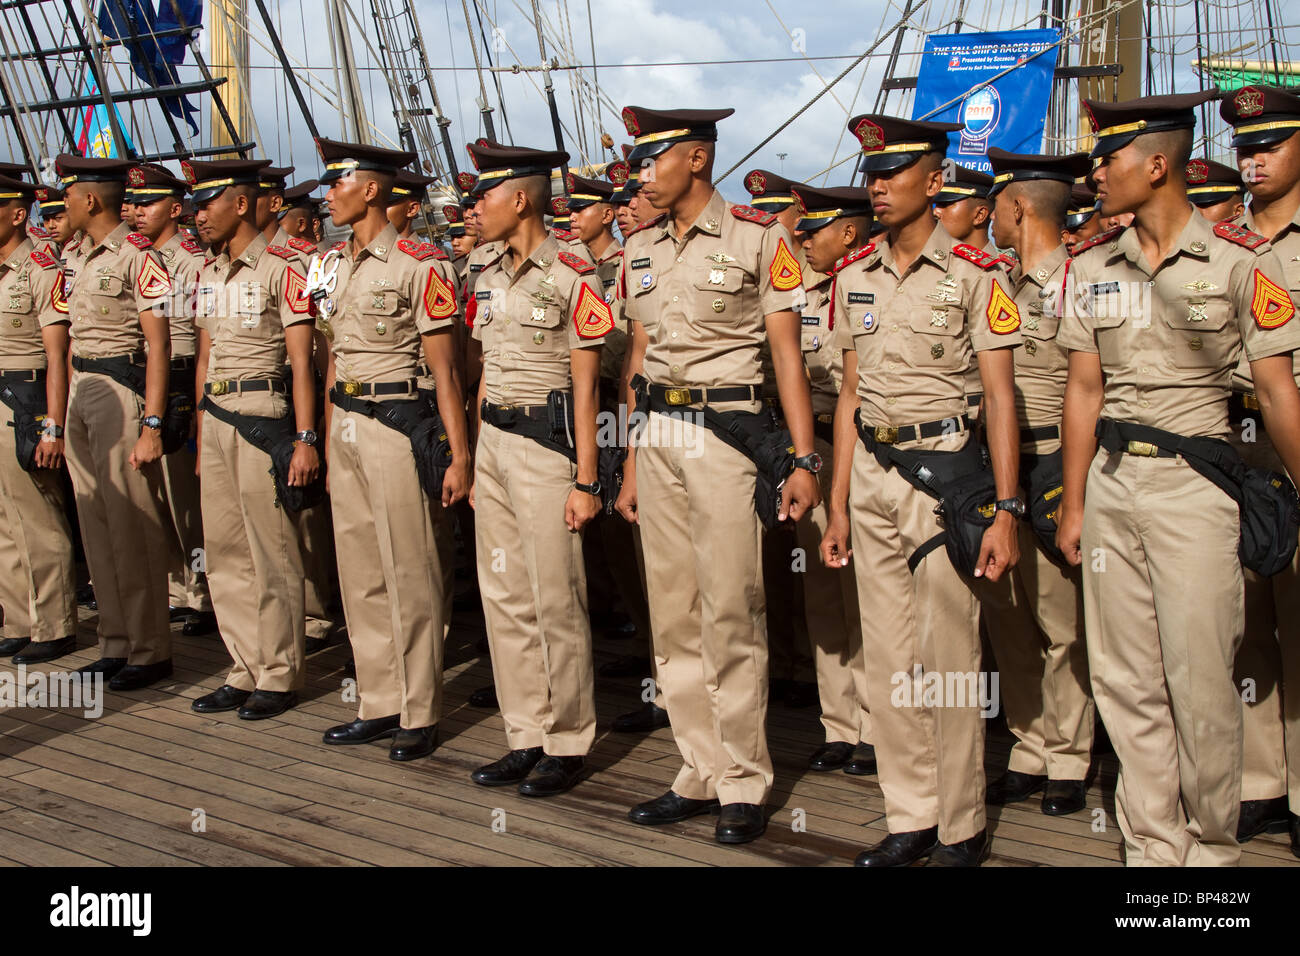 Cadets de la marine indonésienne en uniforme, en parade à la 54ème course annuelle de Tall Ships Race & Regatta, Hartlepool, Tessport, Cleveland, Royaume-Uni Banque D'Images